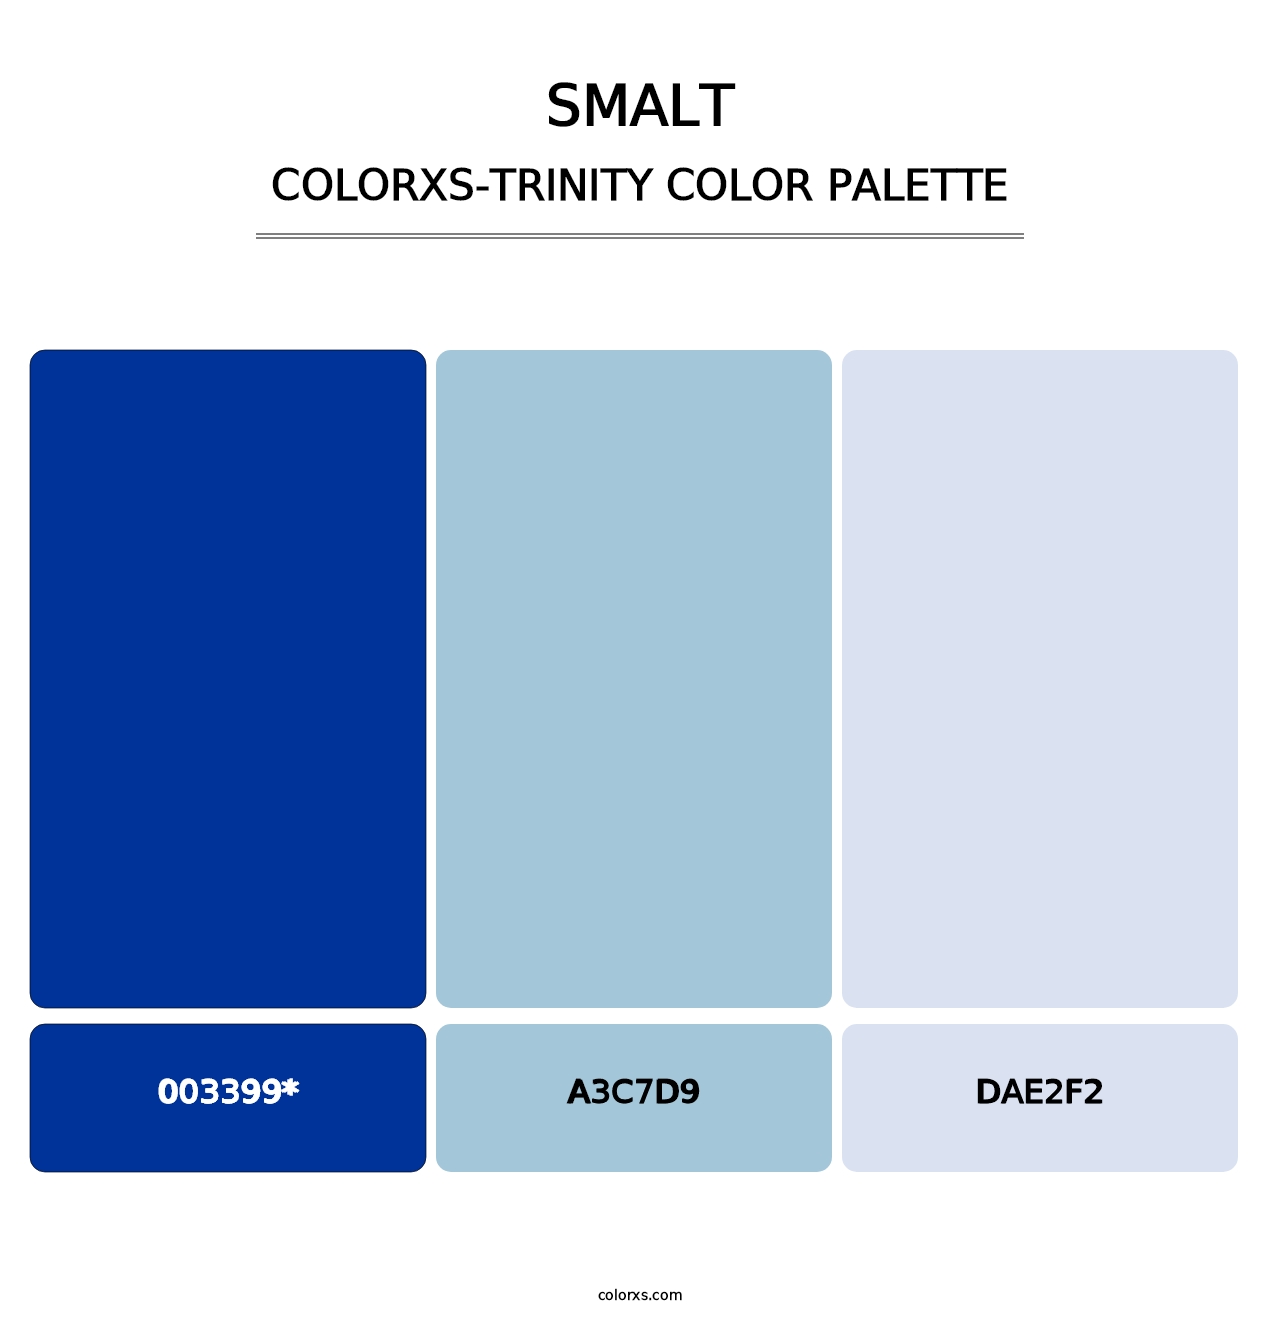 Smalt - Colorxs Trinity Palette